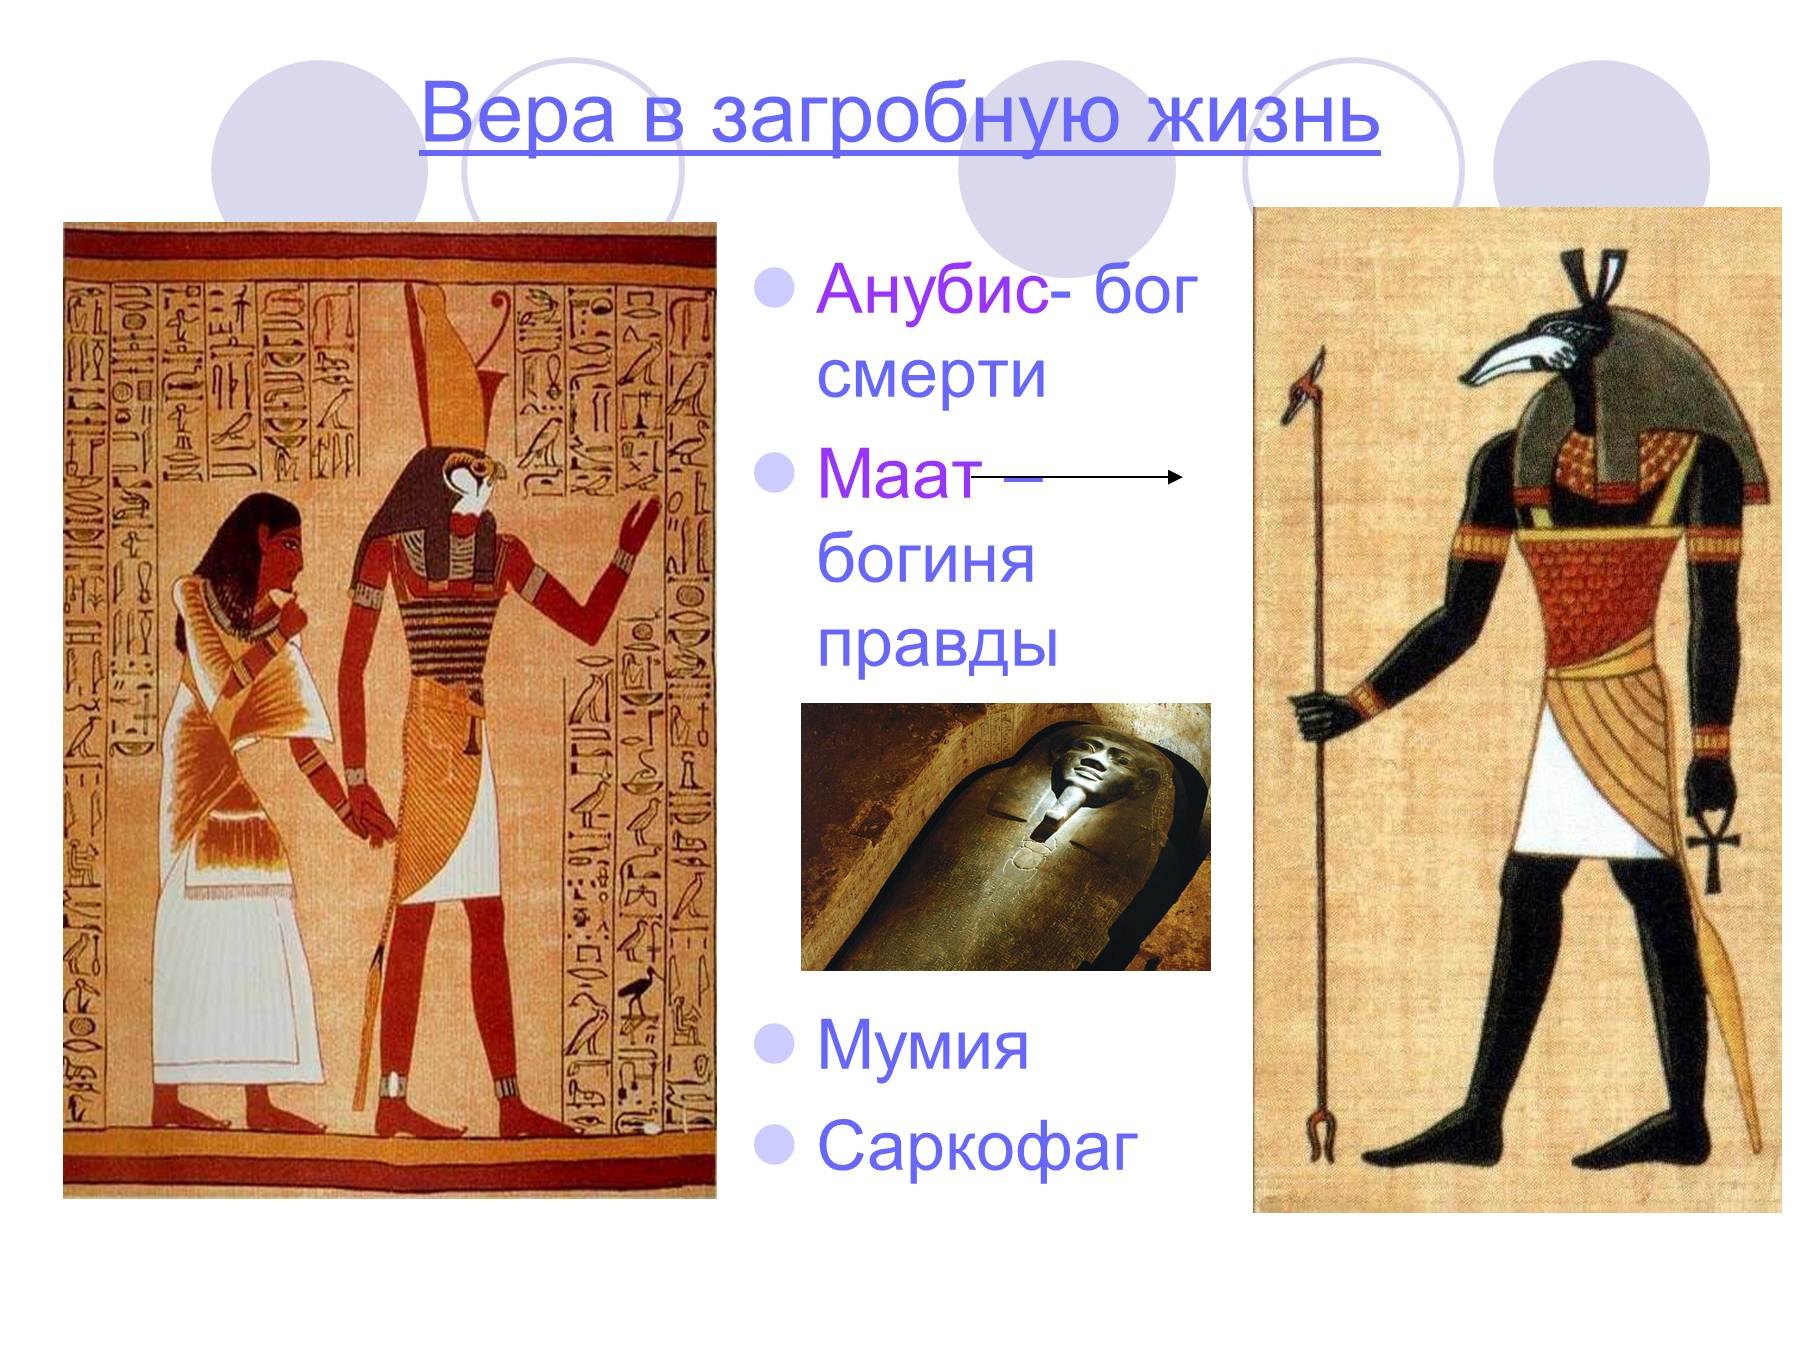 Изображения относящиеся к истории древнего египта